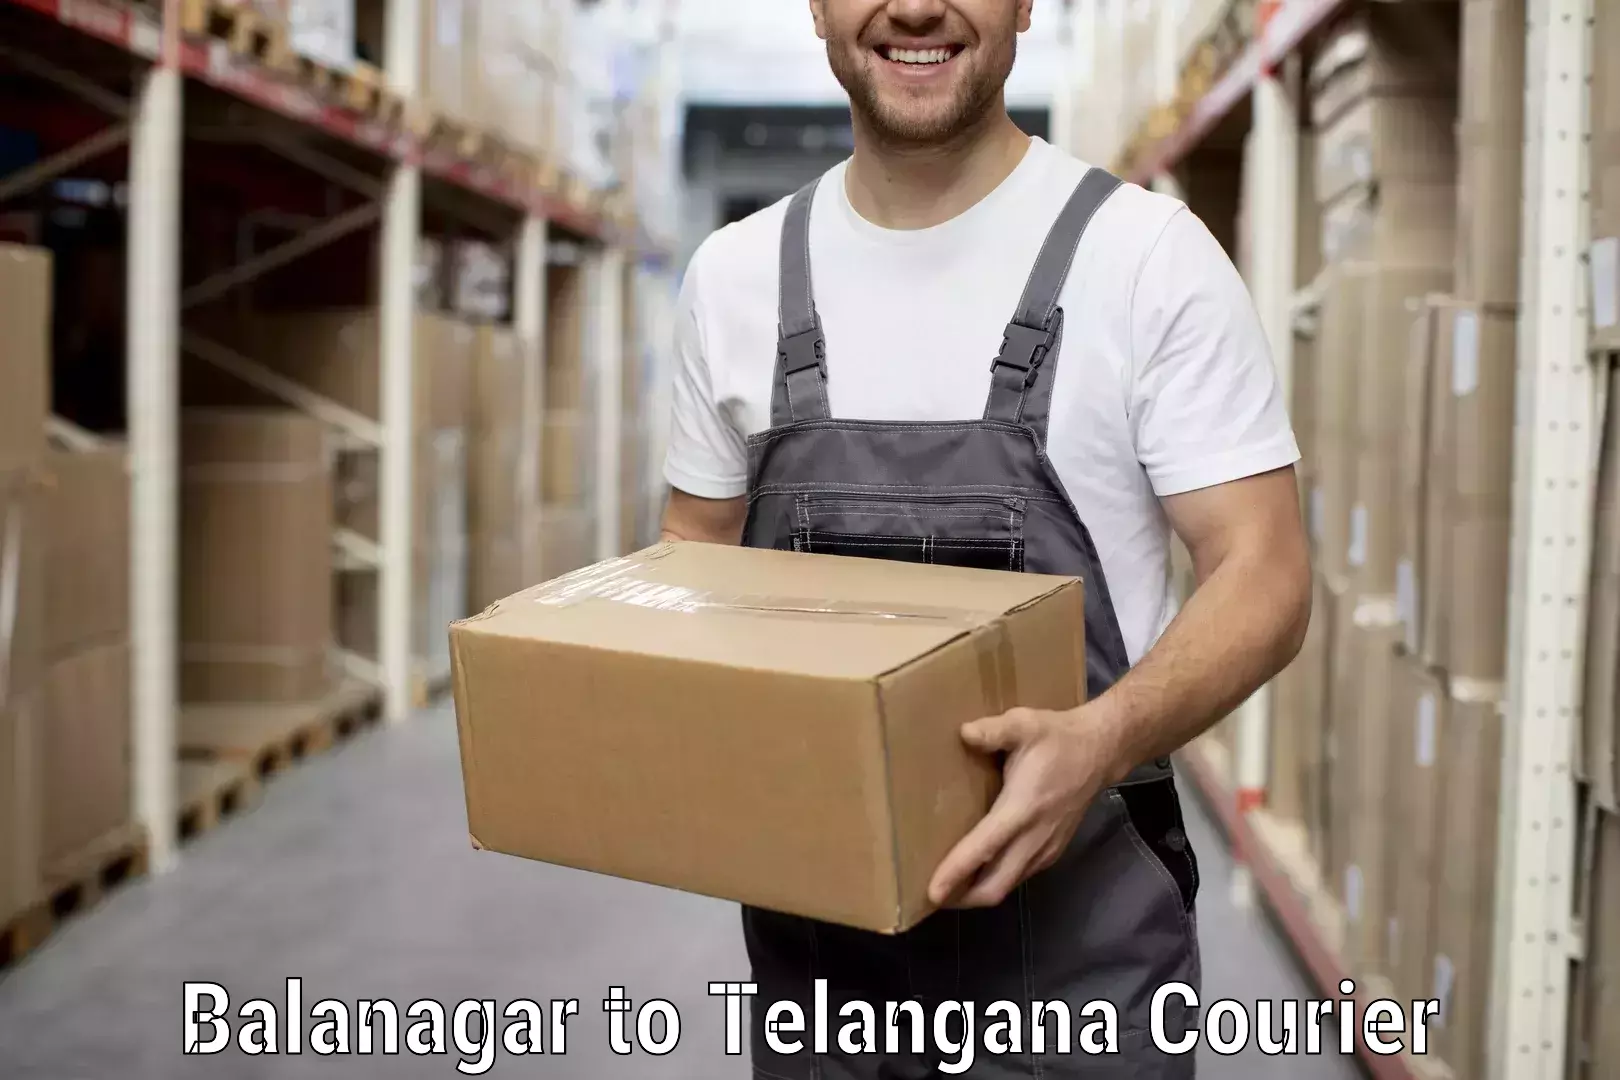 Professional moving company Balanagar to Vemulawada